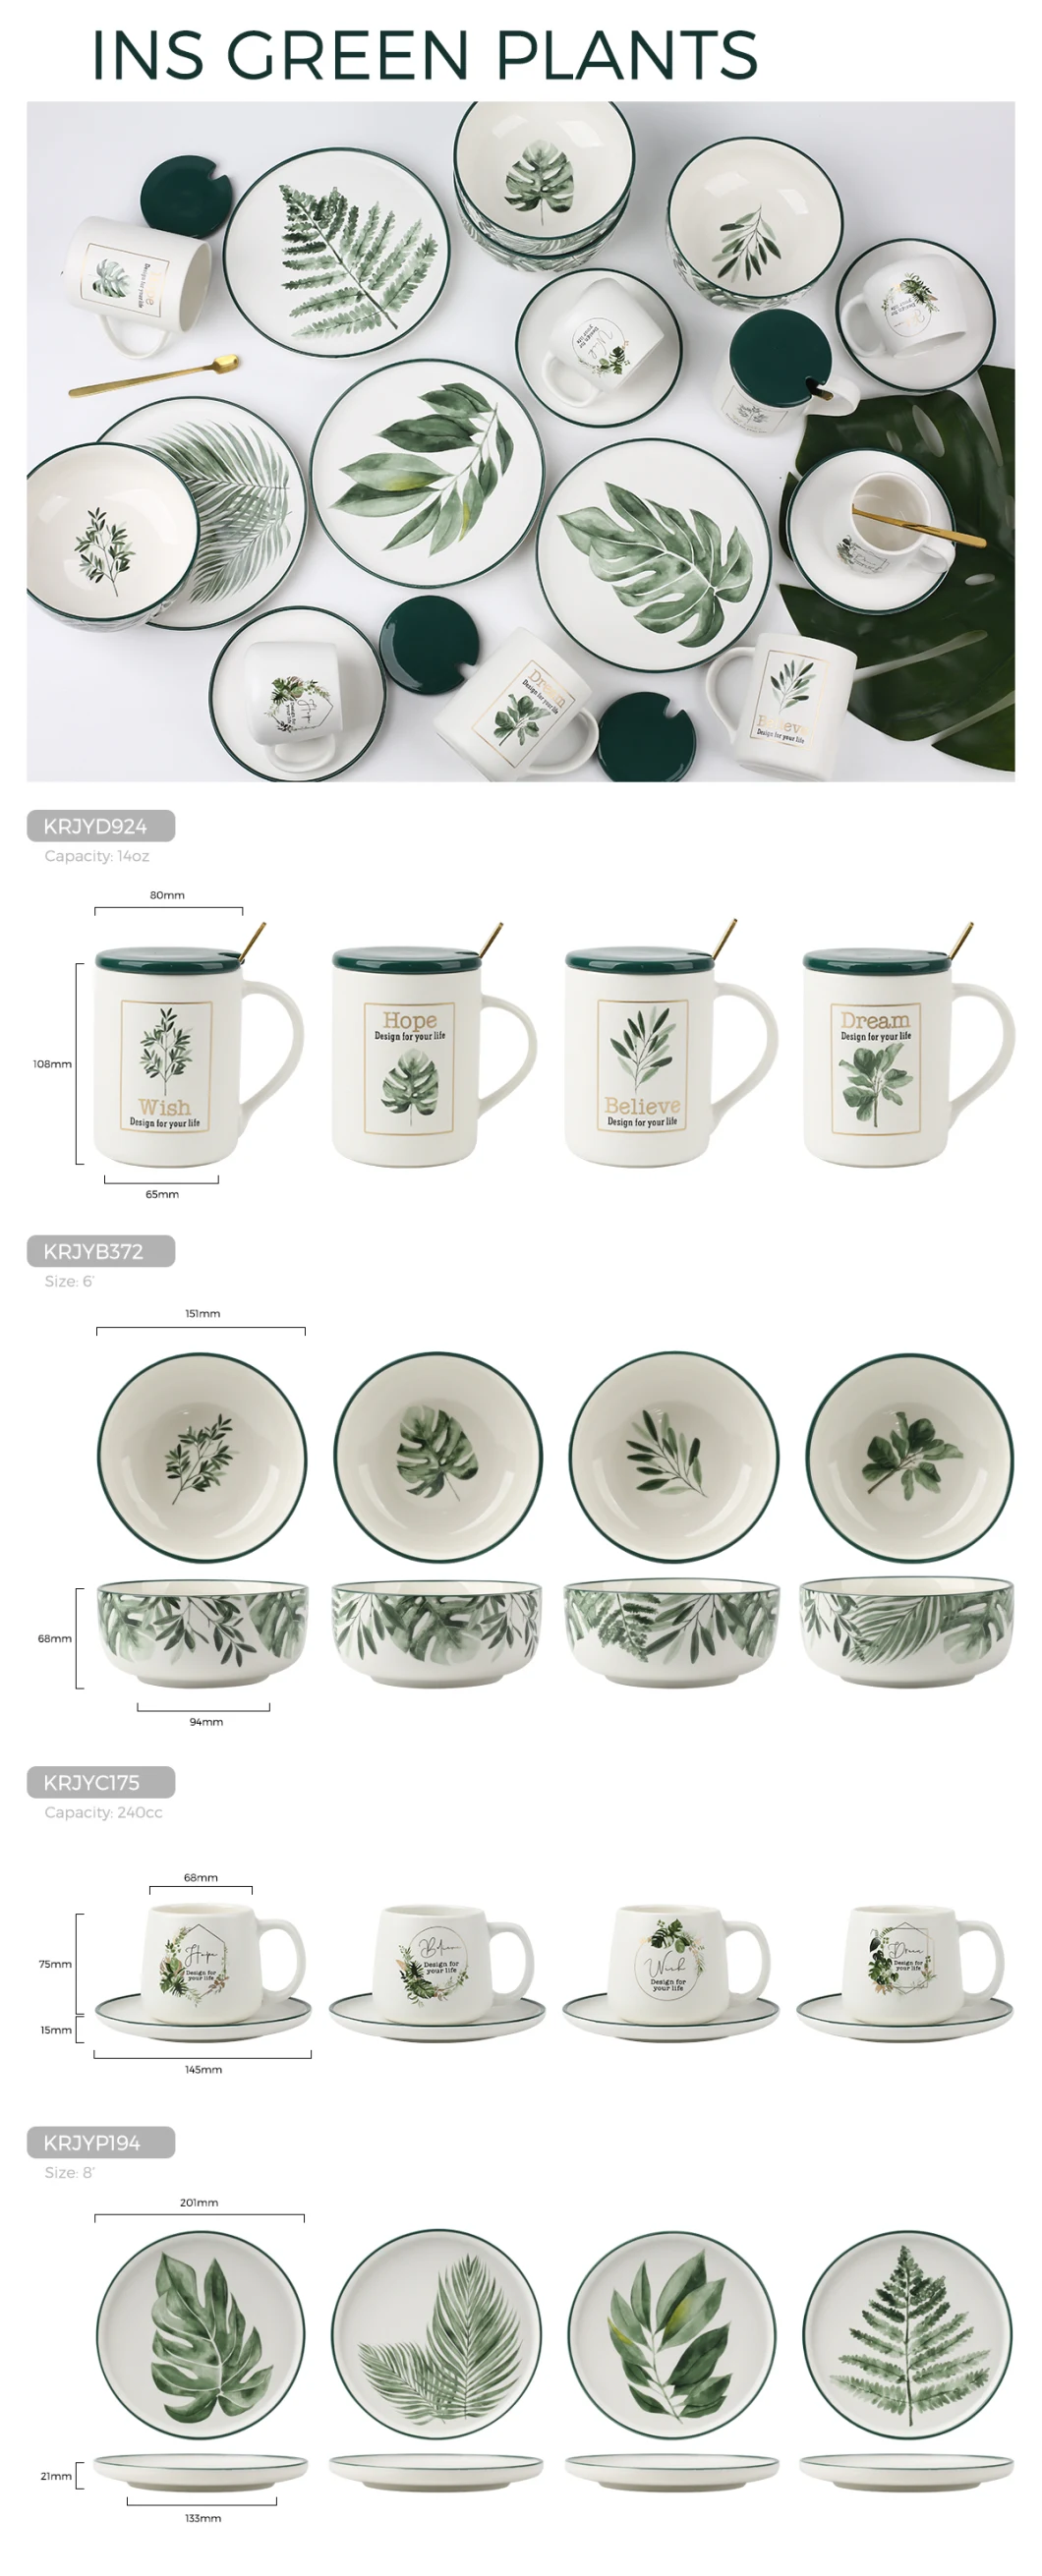 Kalring Ceramic Bowl Green Plants Design Color Rim Size 6